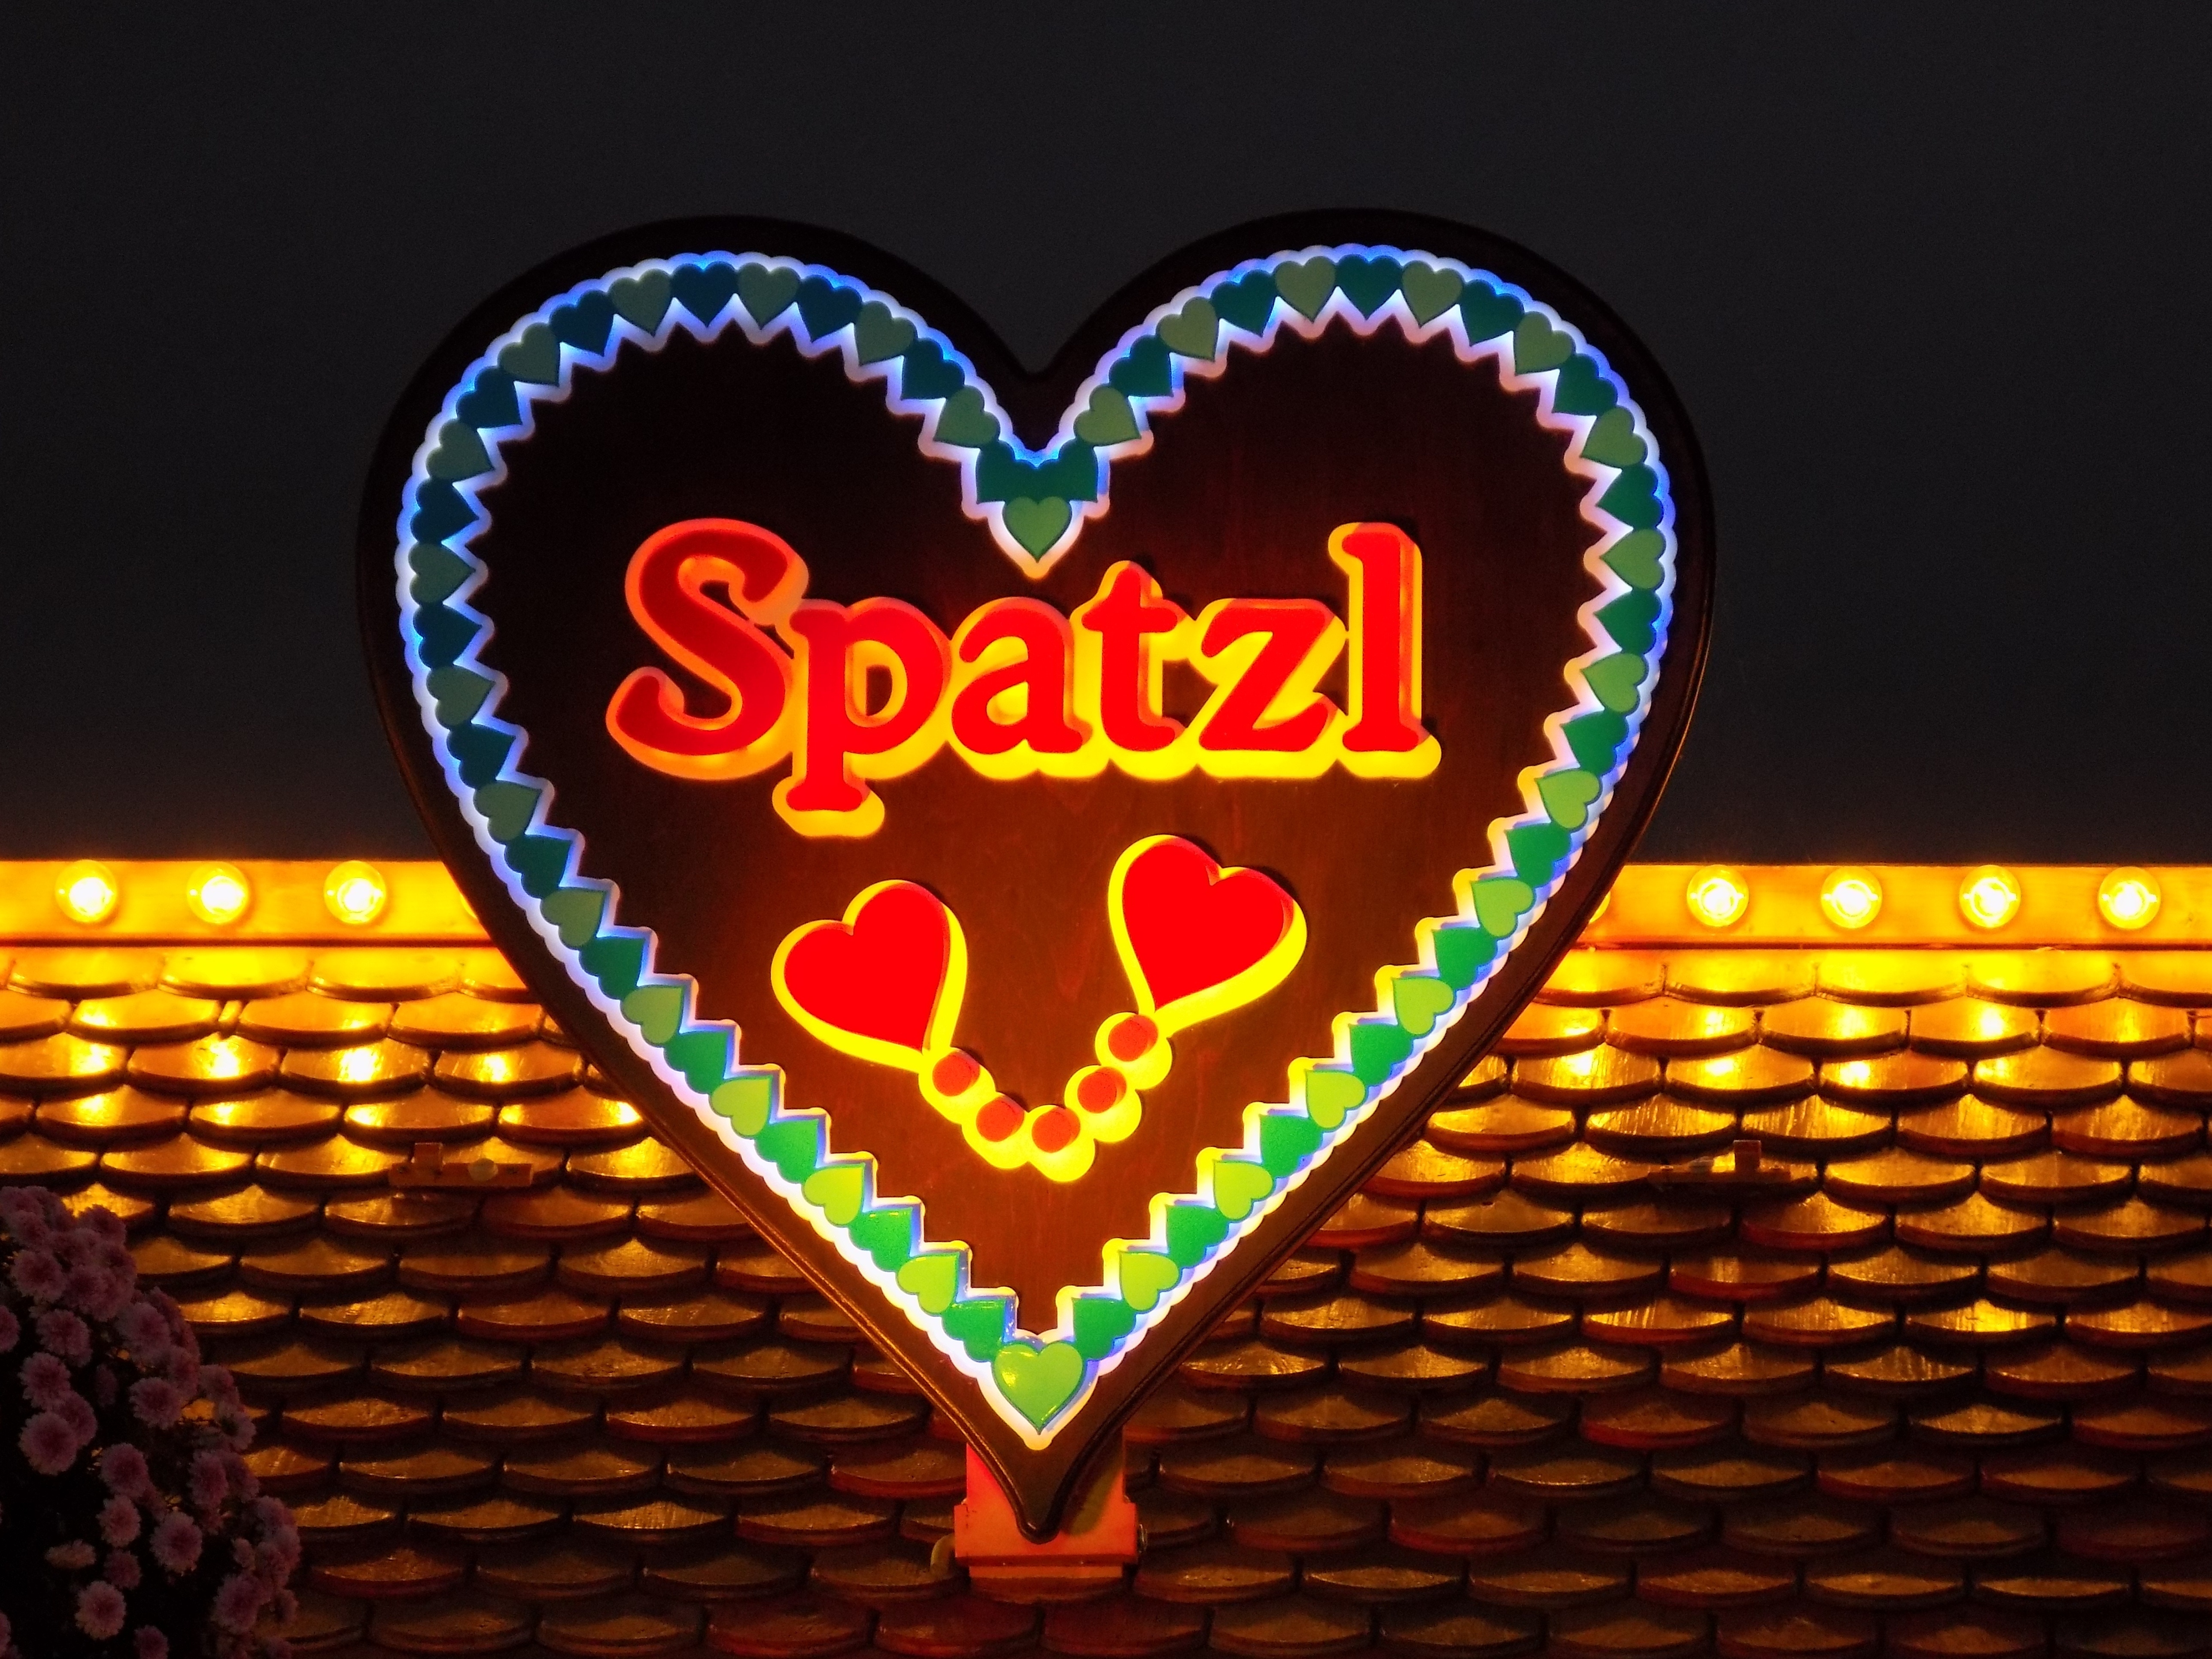 spatzl heart shape sign